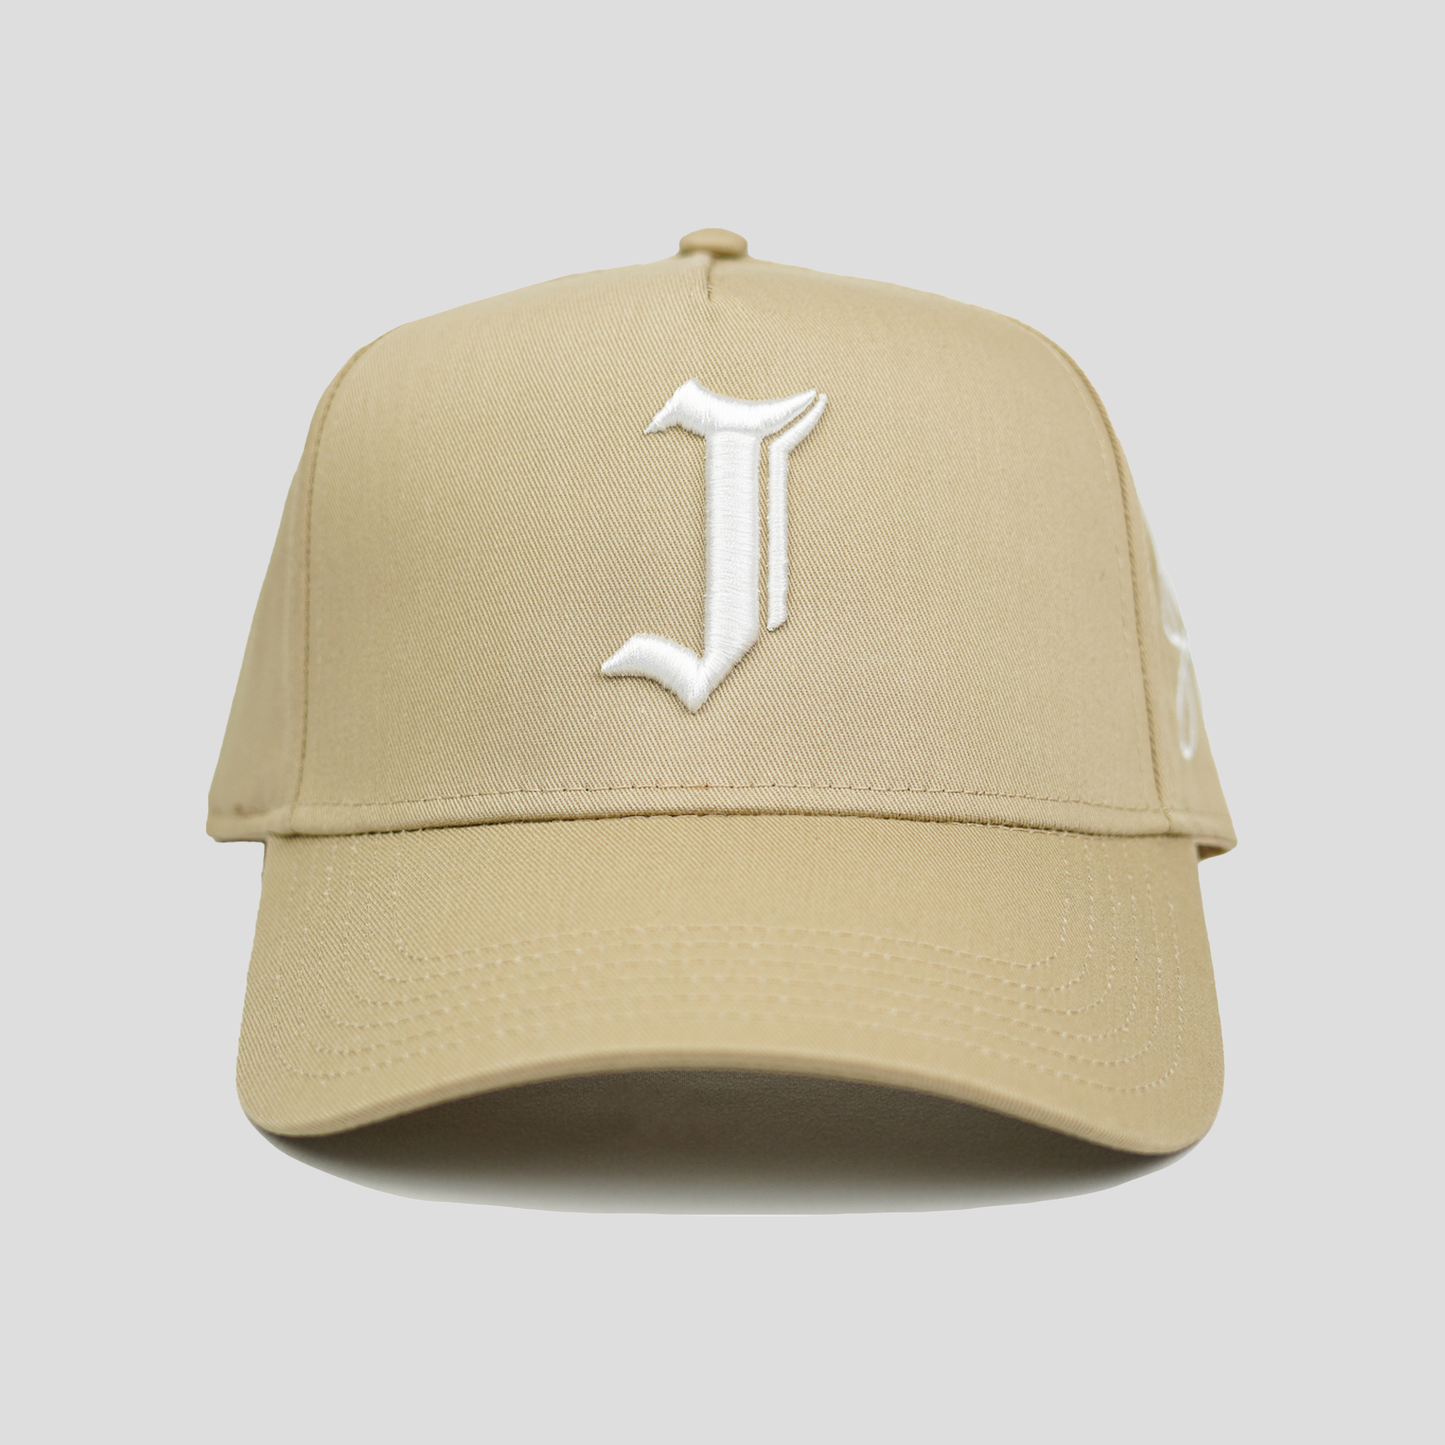 "J" Signature Snapback Hat (KHAKI)